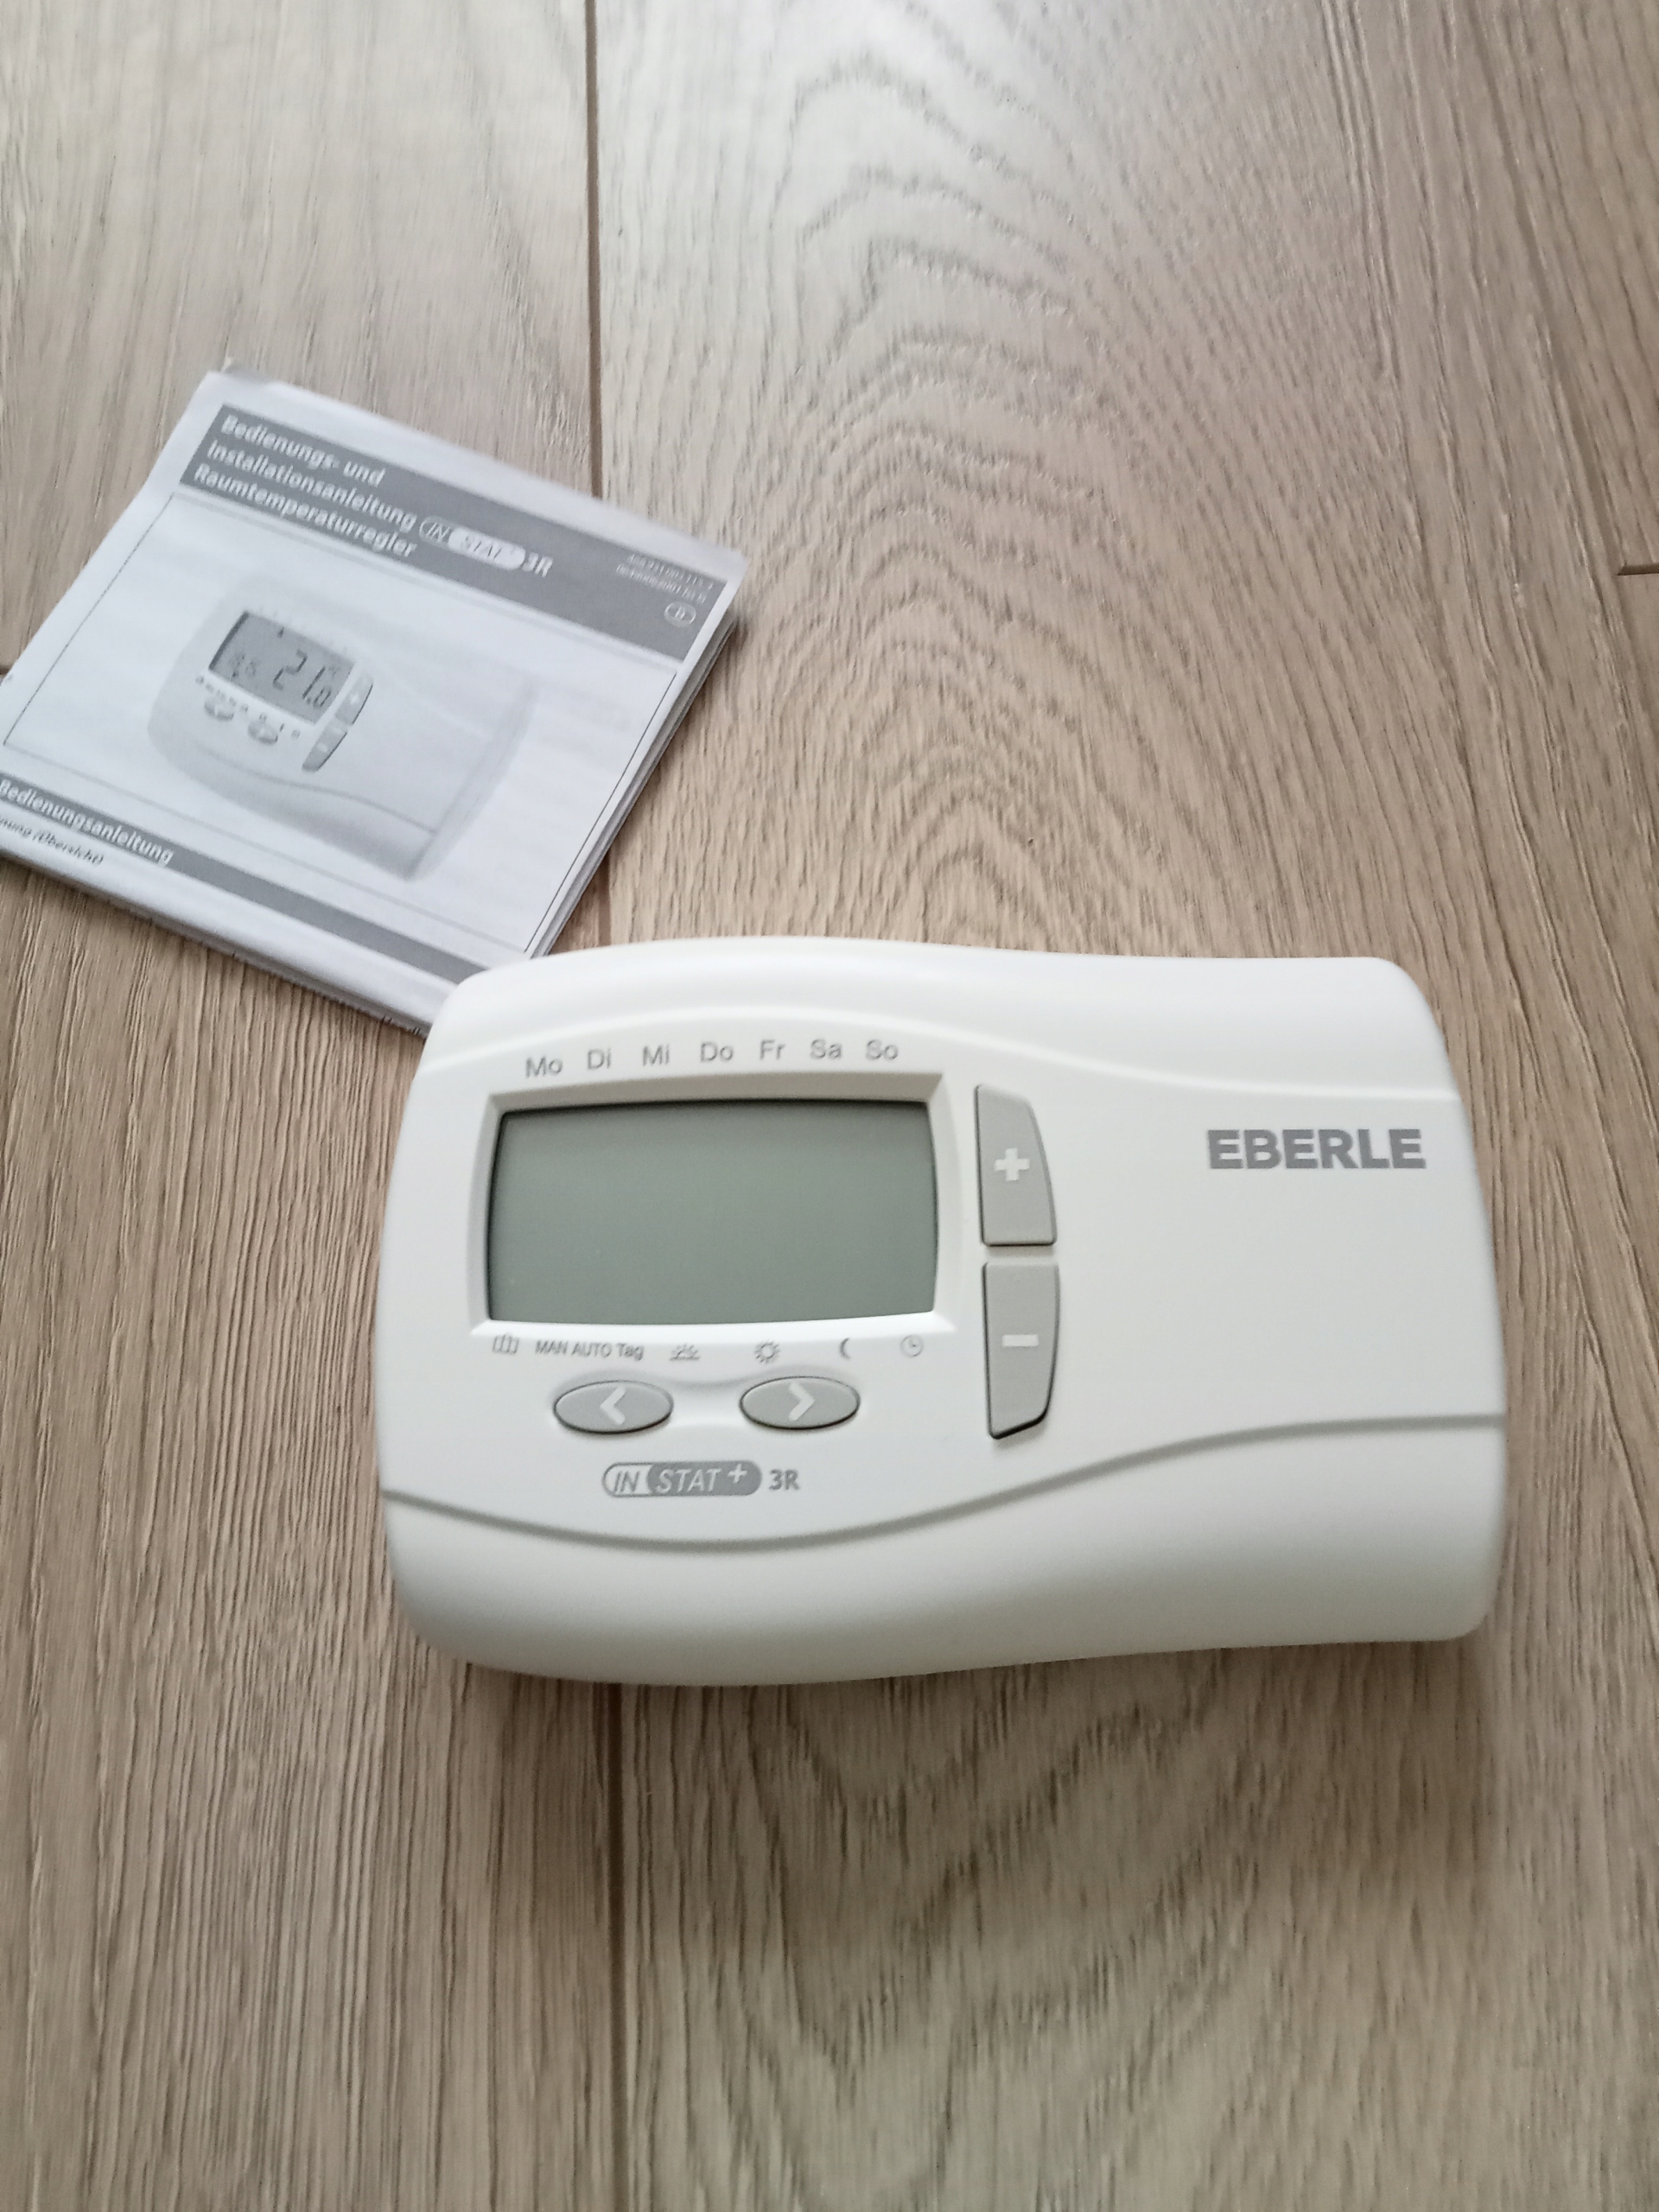 Eberle Instat Plus 3 R cyfrowy termostat pokojowy 12540264329 - Allegro.pl